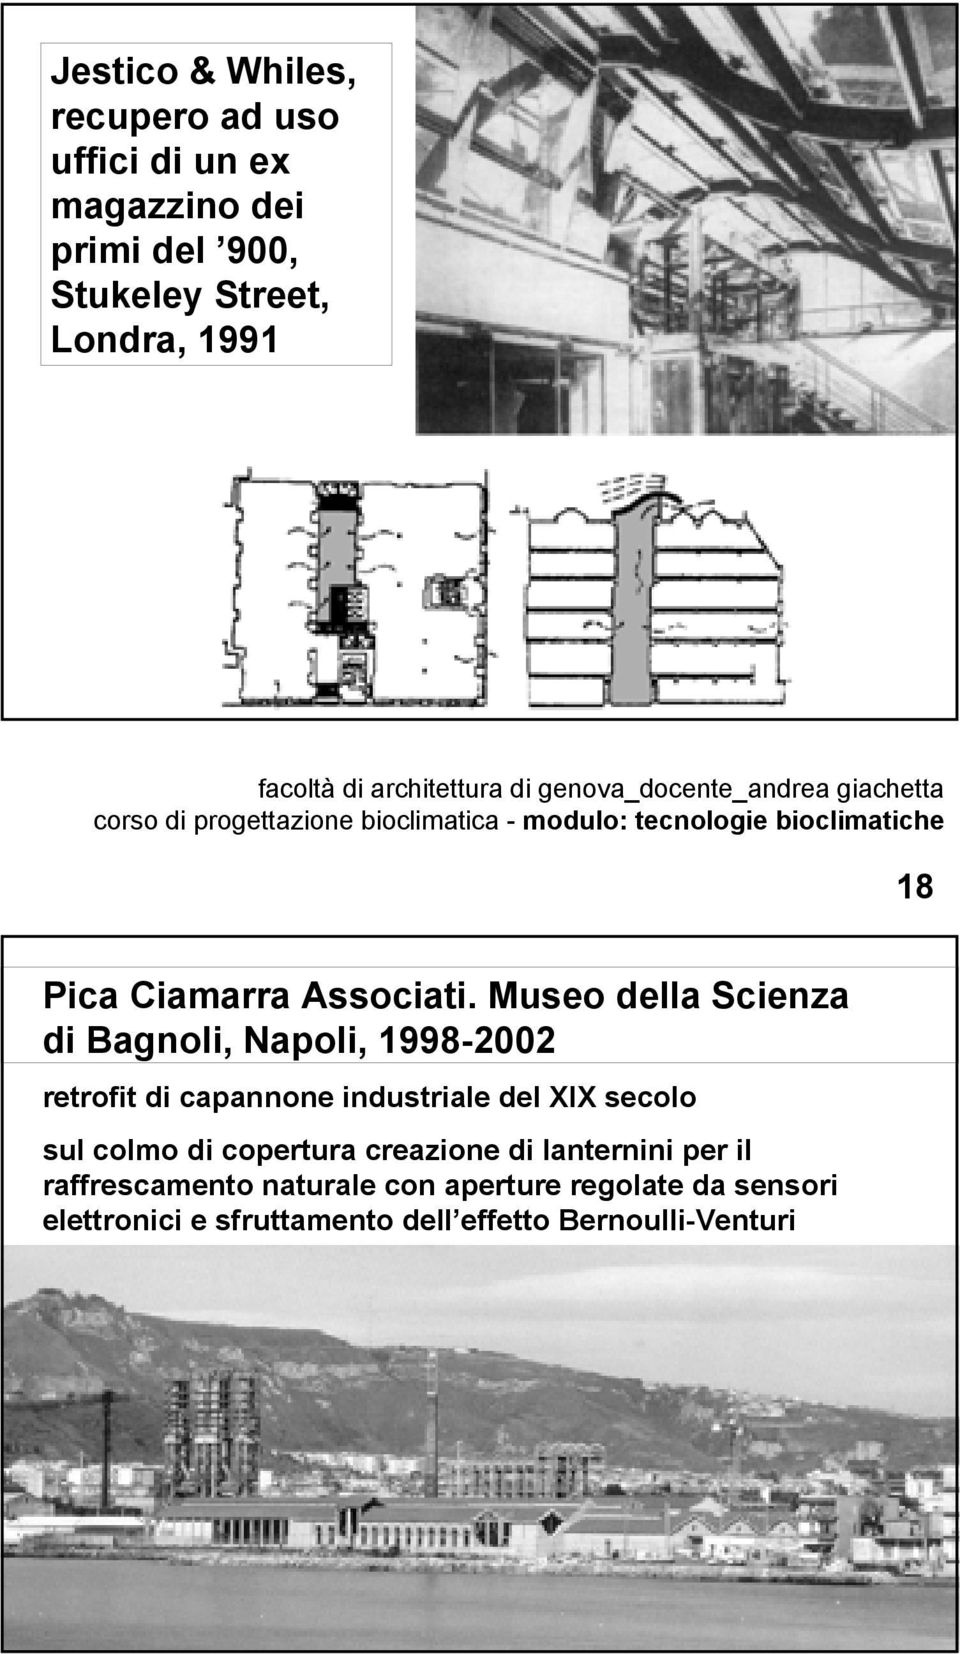 Museo della Scienza di Bagnoli, Napoli, 1998-2002 retrofit di capannone industriale del XIX secolo